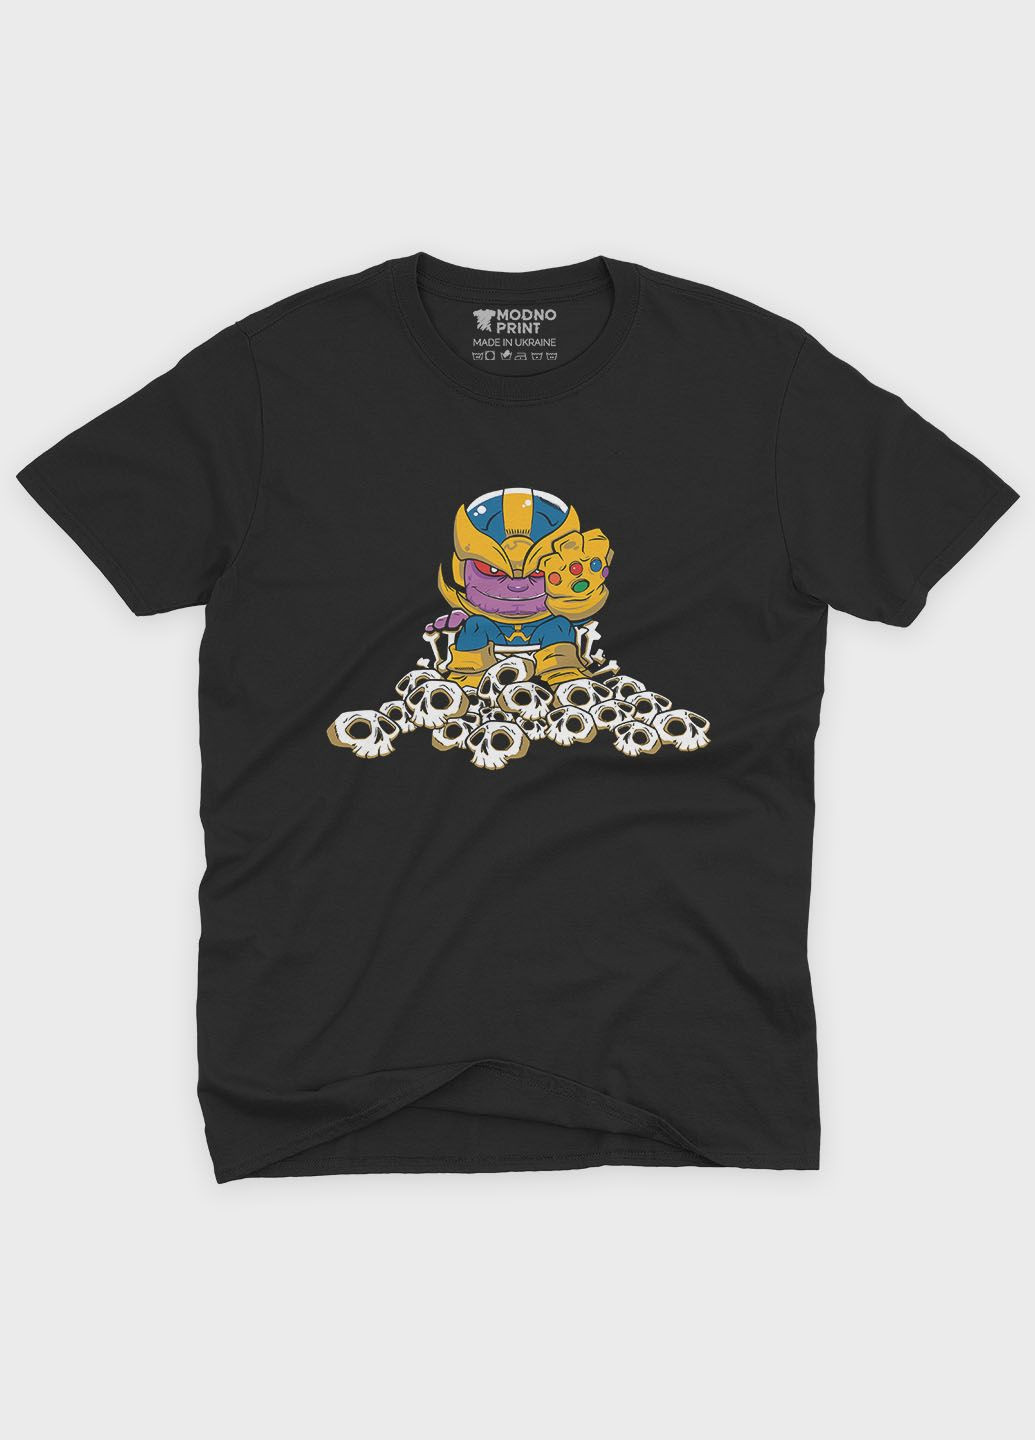 Черная мужская футболка с принтом супезлоды - танос (ts001-1-bl-006-019-004) Modno